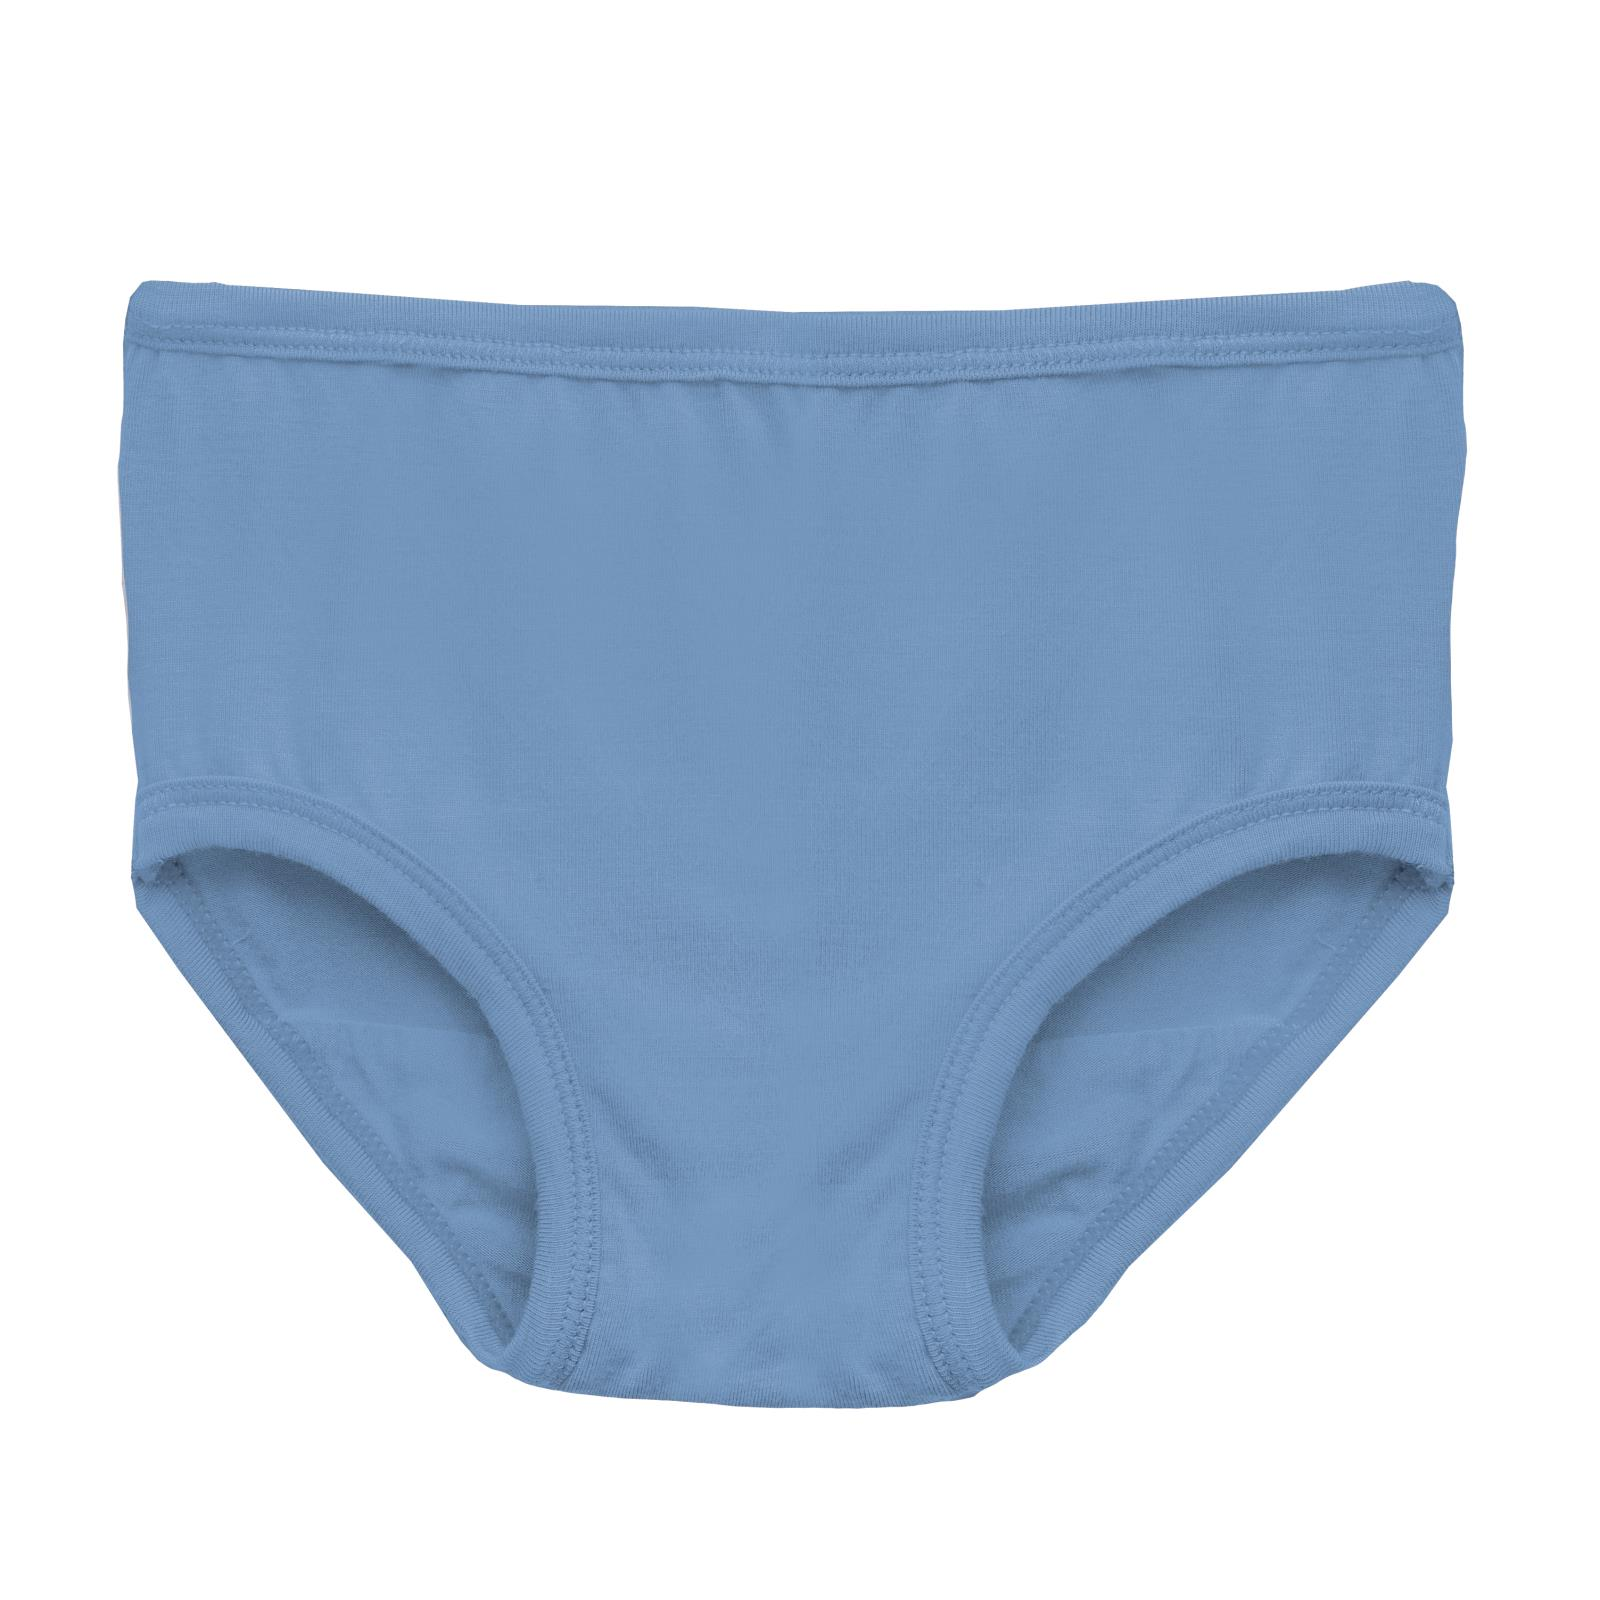 http://www.littlegiantkidz.com/cdn/shop/files/Kickee-Pants-Dream-Blue-Girls-Underwear-Kickee-Pants.png?v=1705613919&width=2048